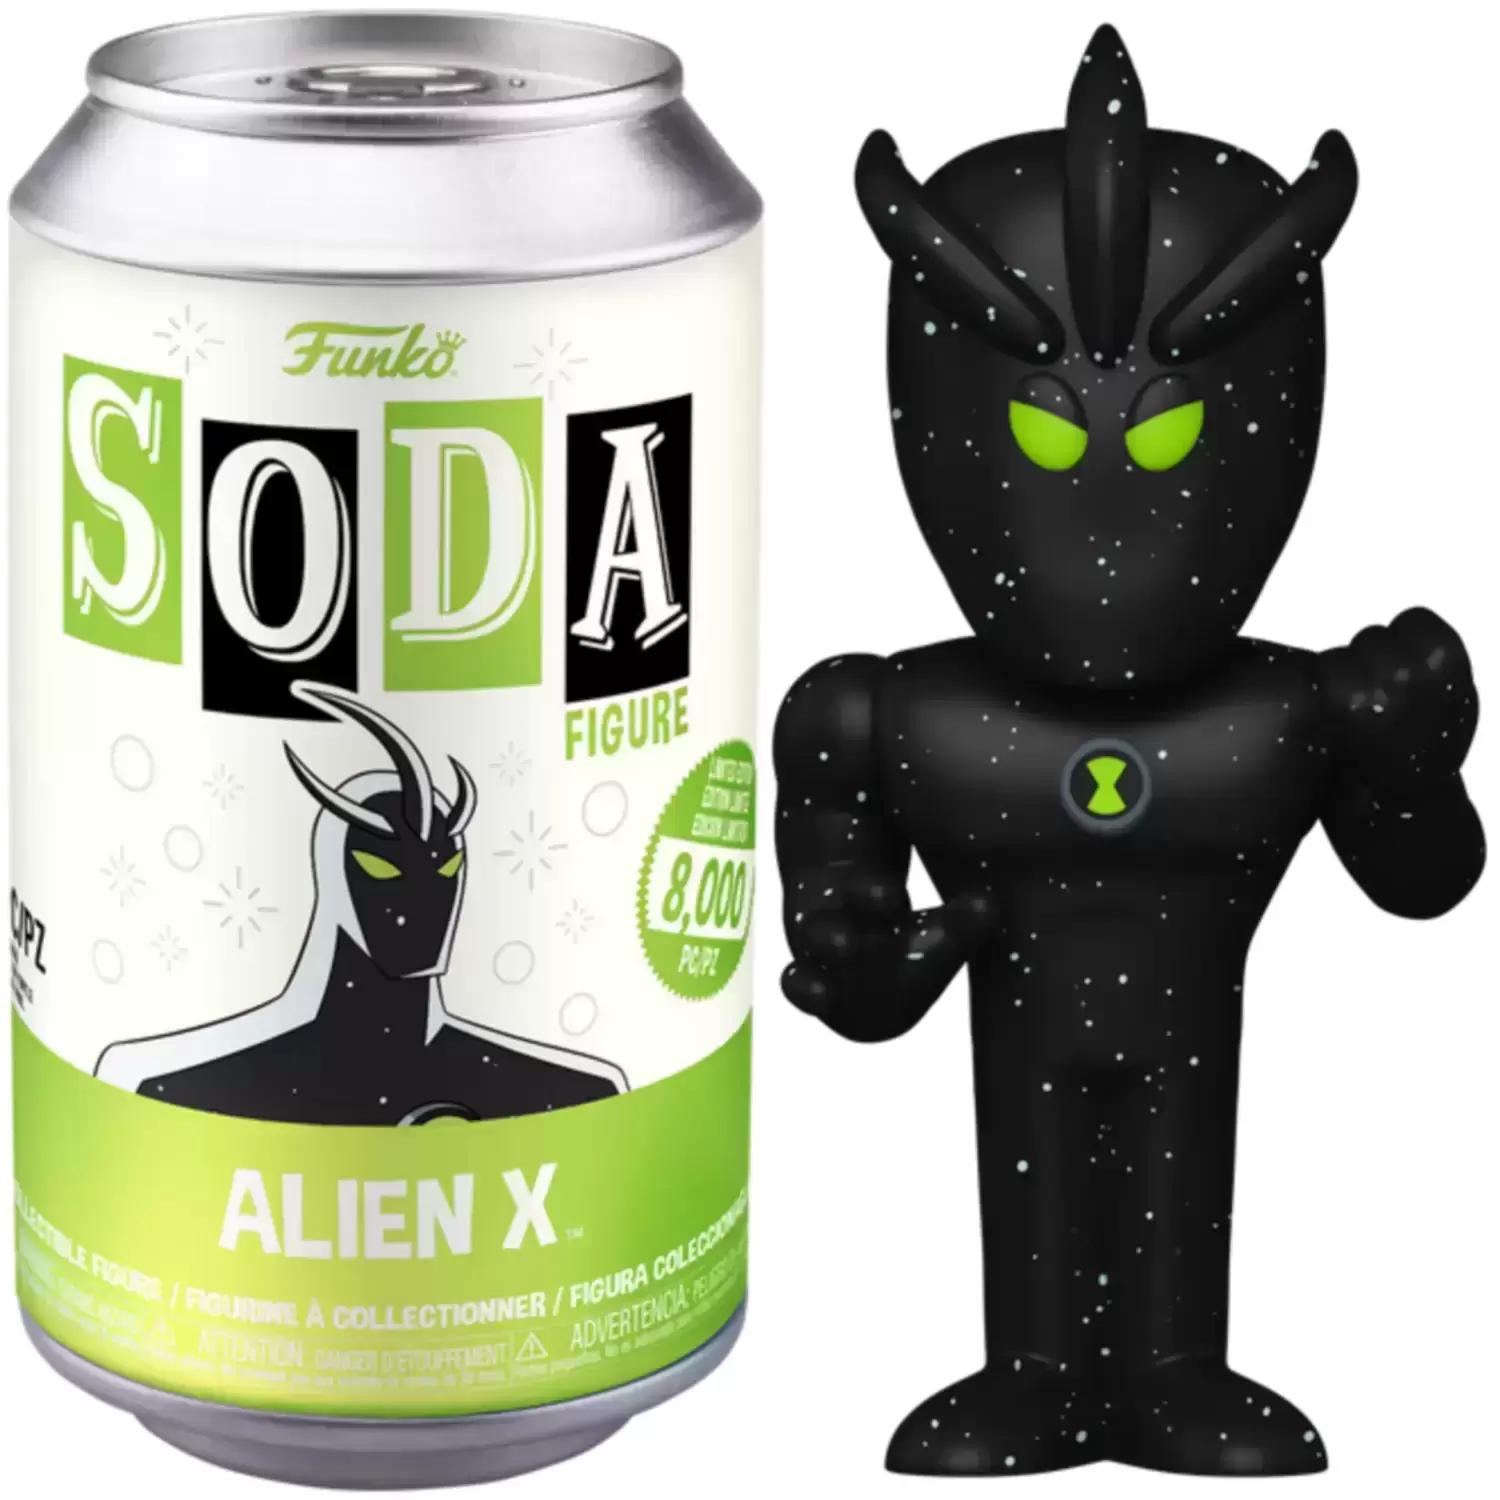 Vinyl Soda! - Ben 10 - Alien X